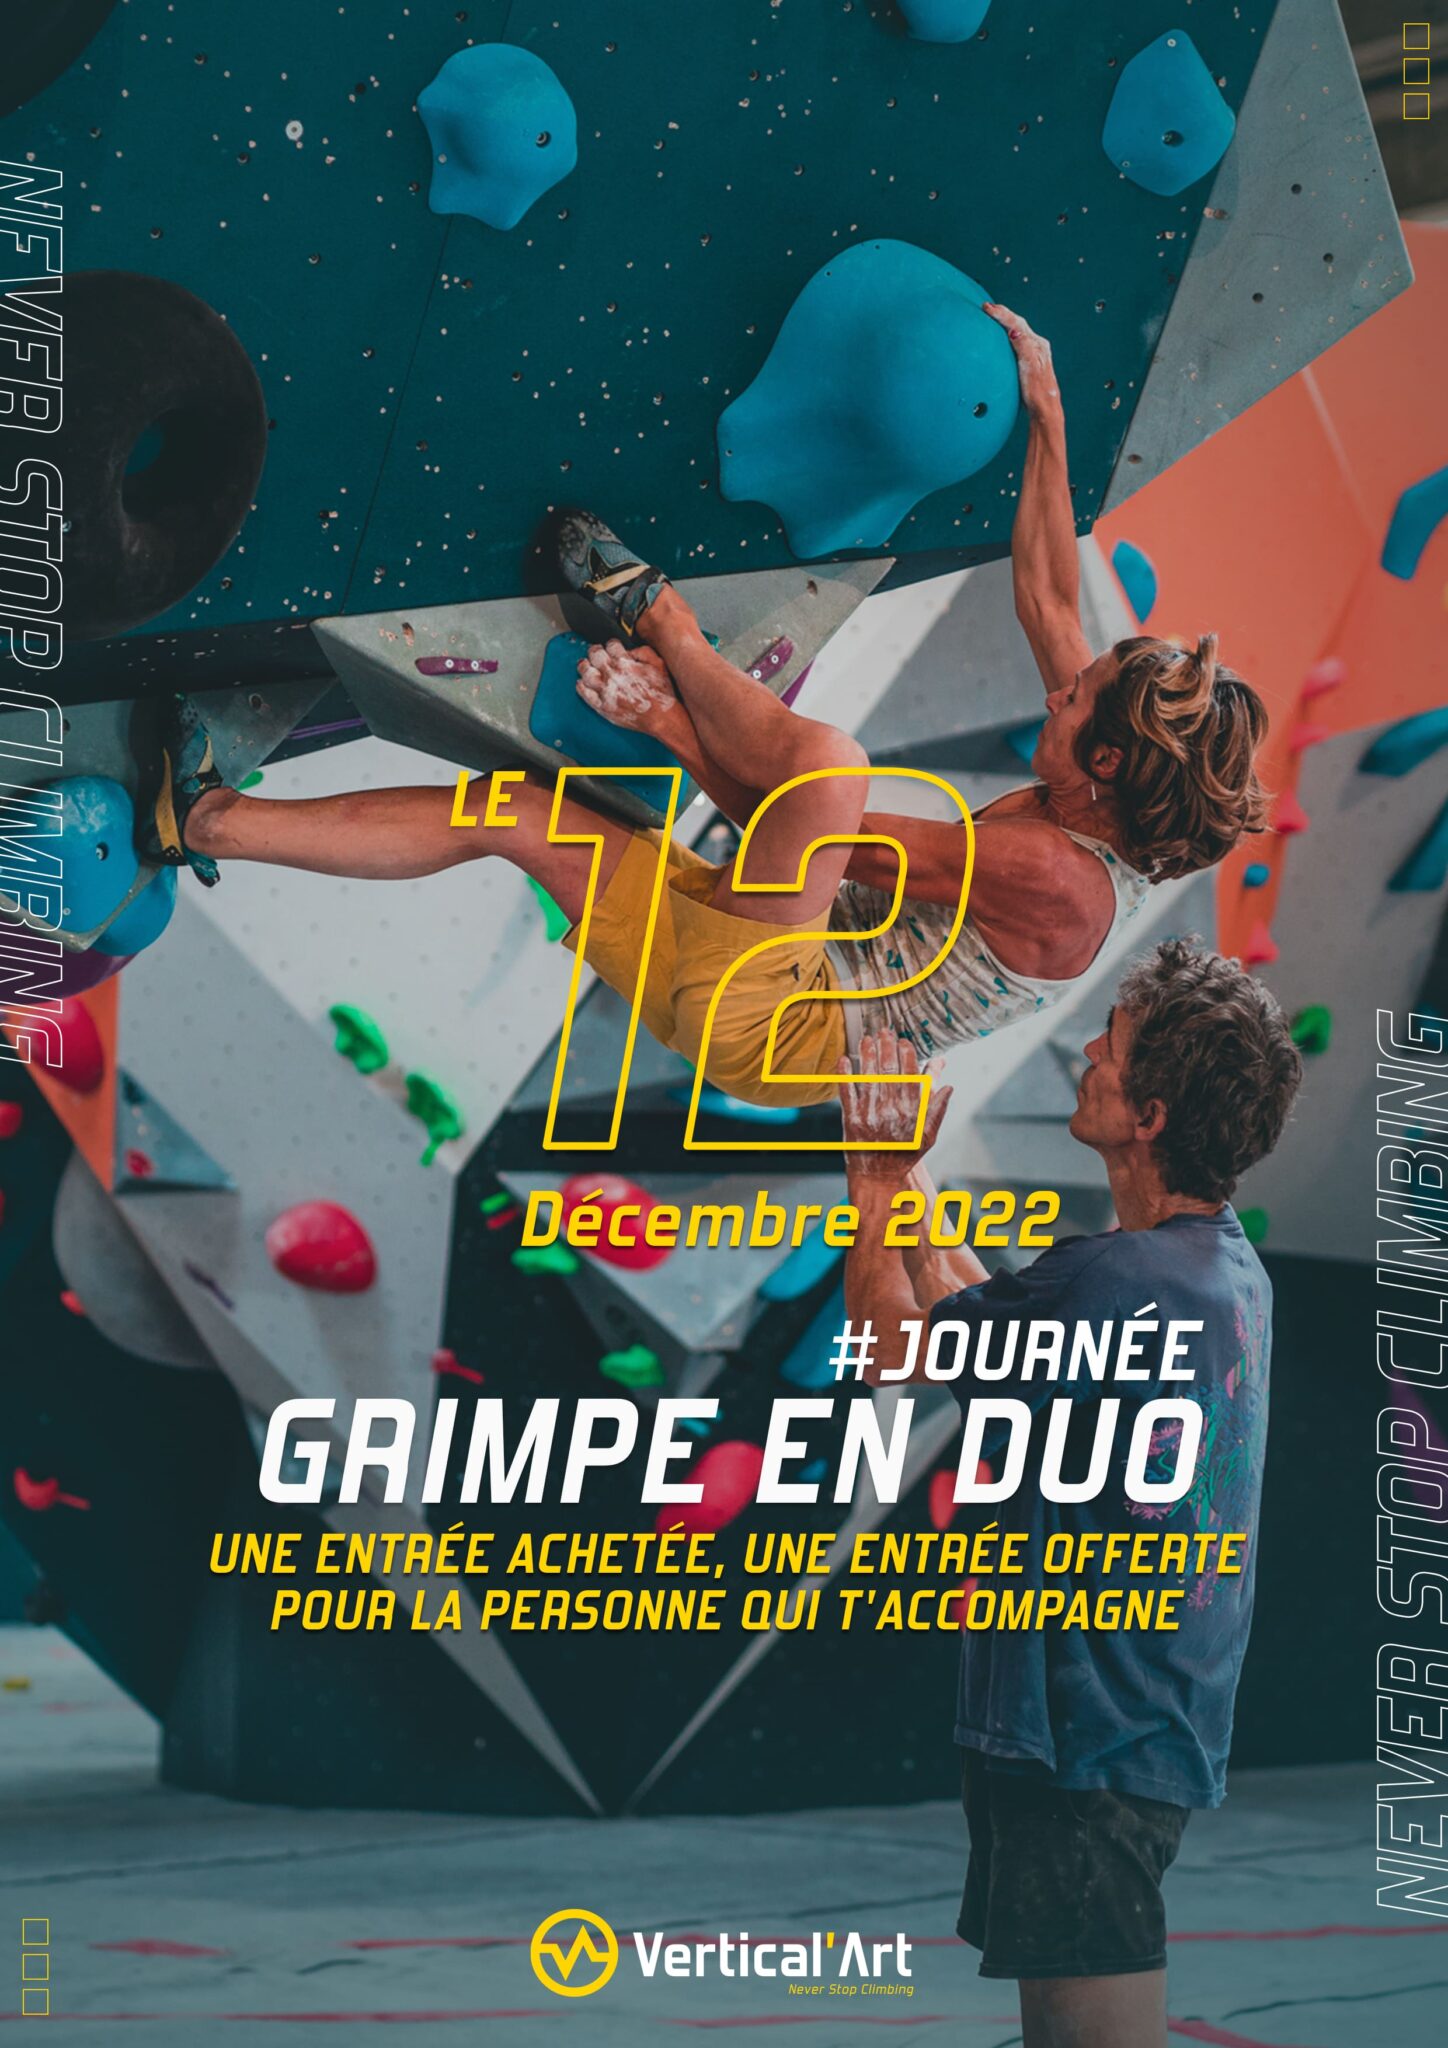 Grimpe en duo Vertical'Art Nantes 12 décembre 2022 une entrée achetée, une offerte